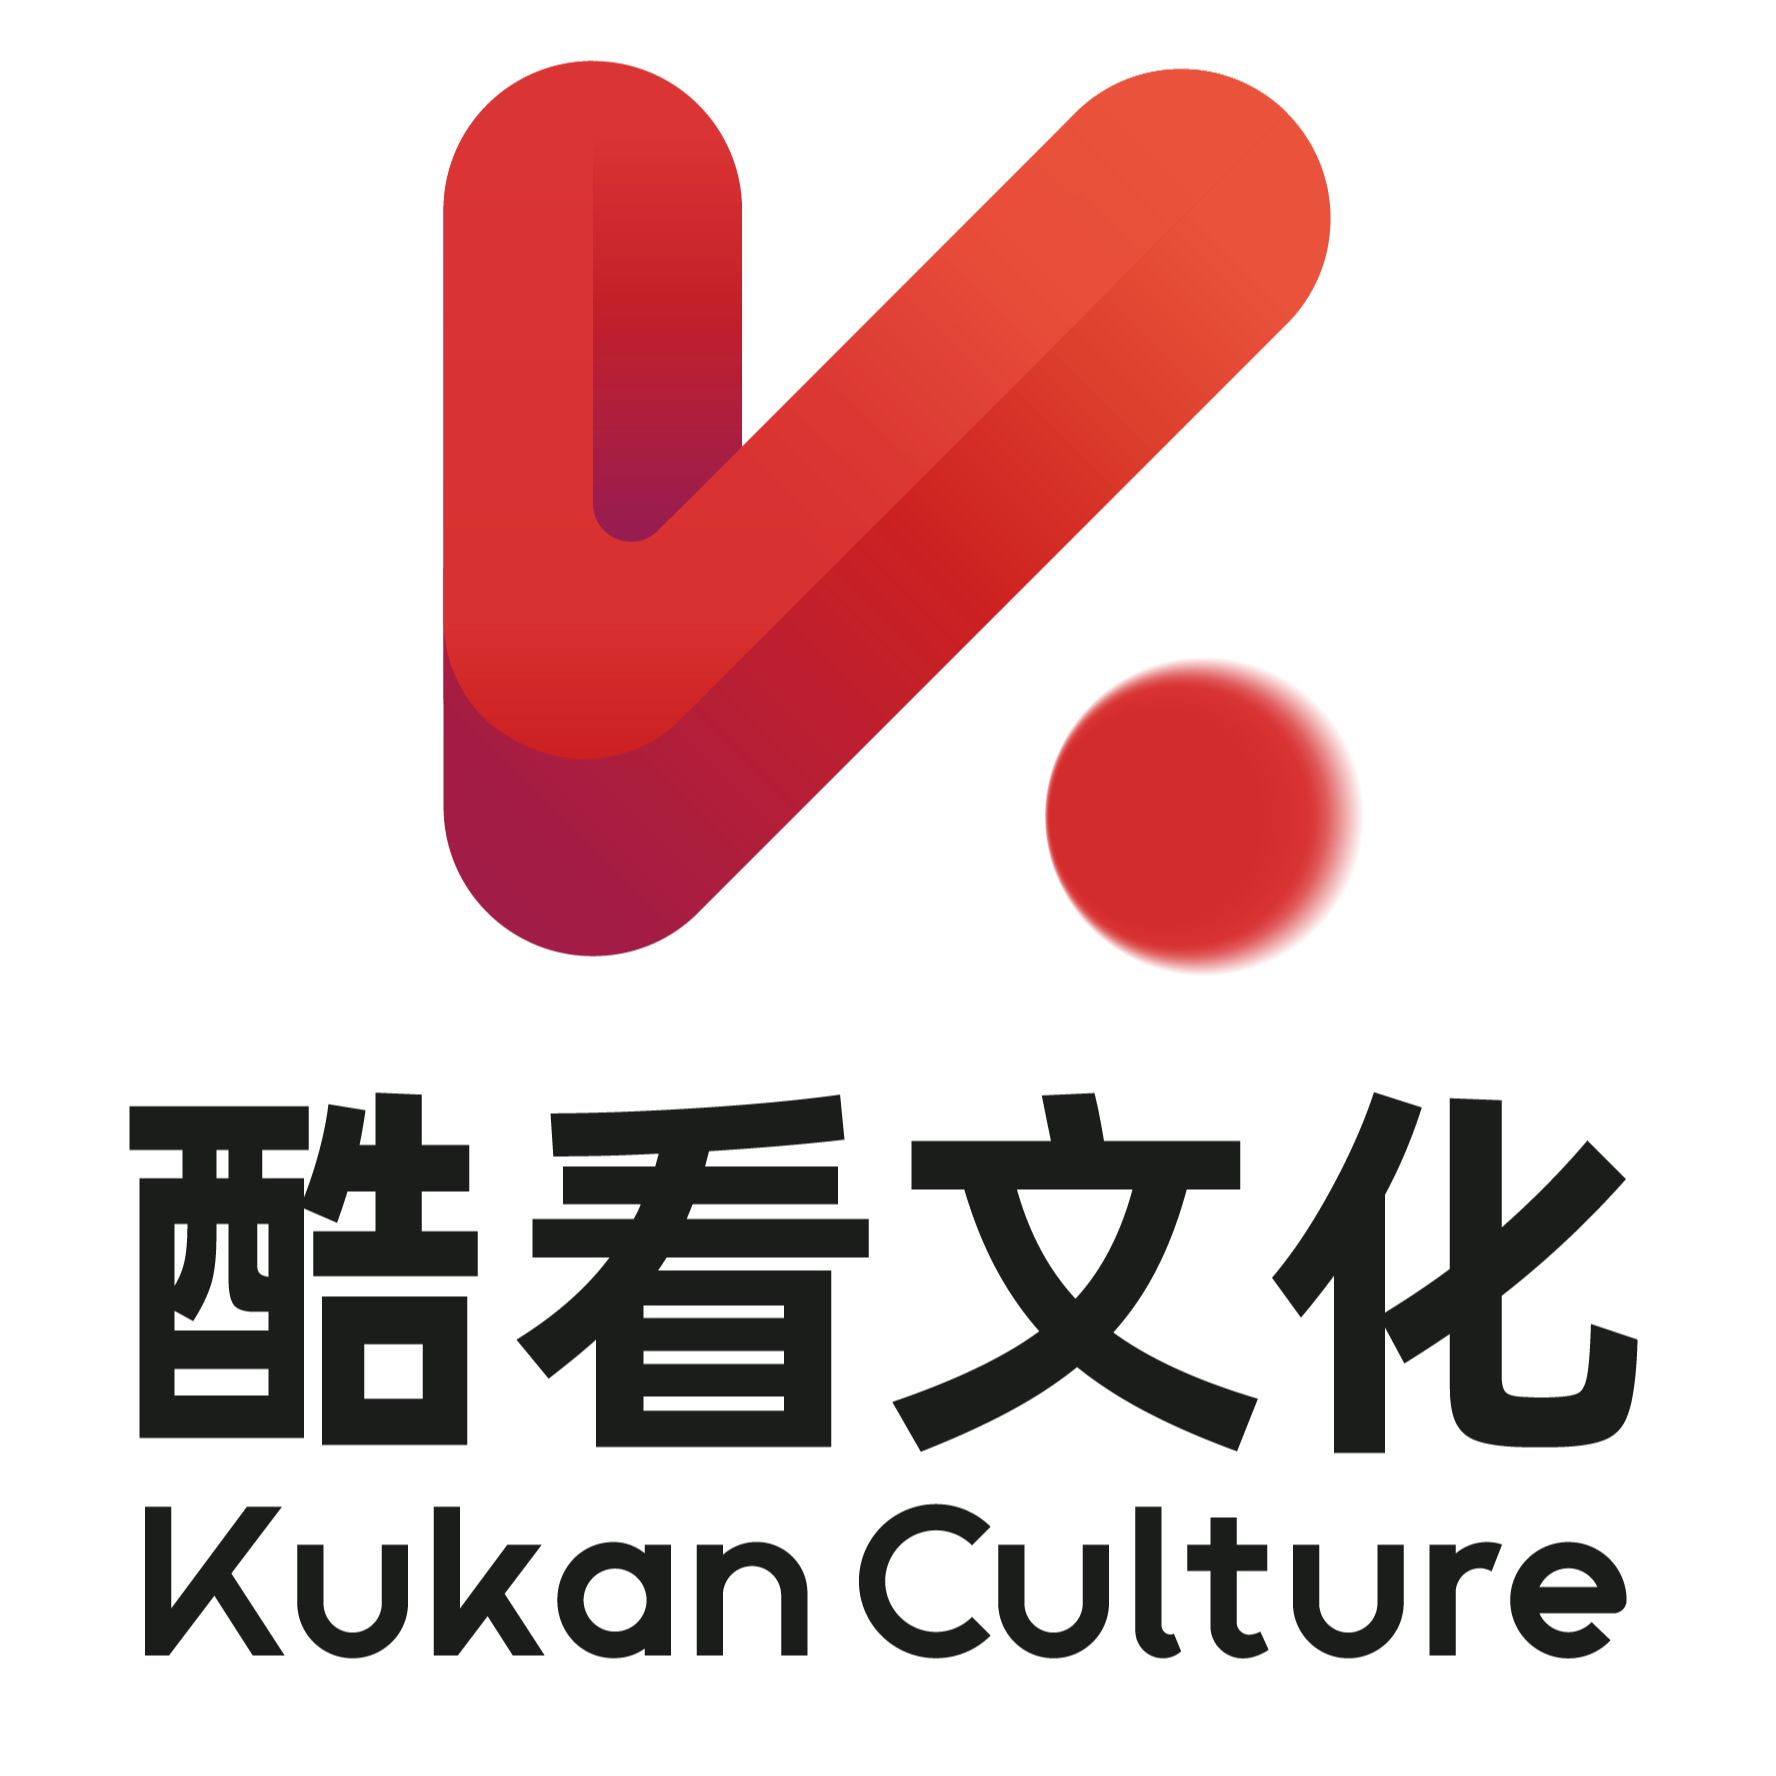 Kukan Culture logo